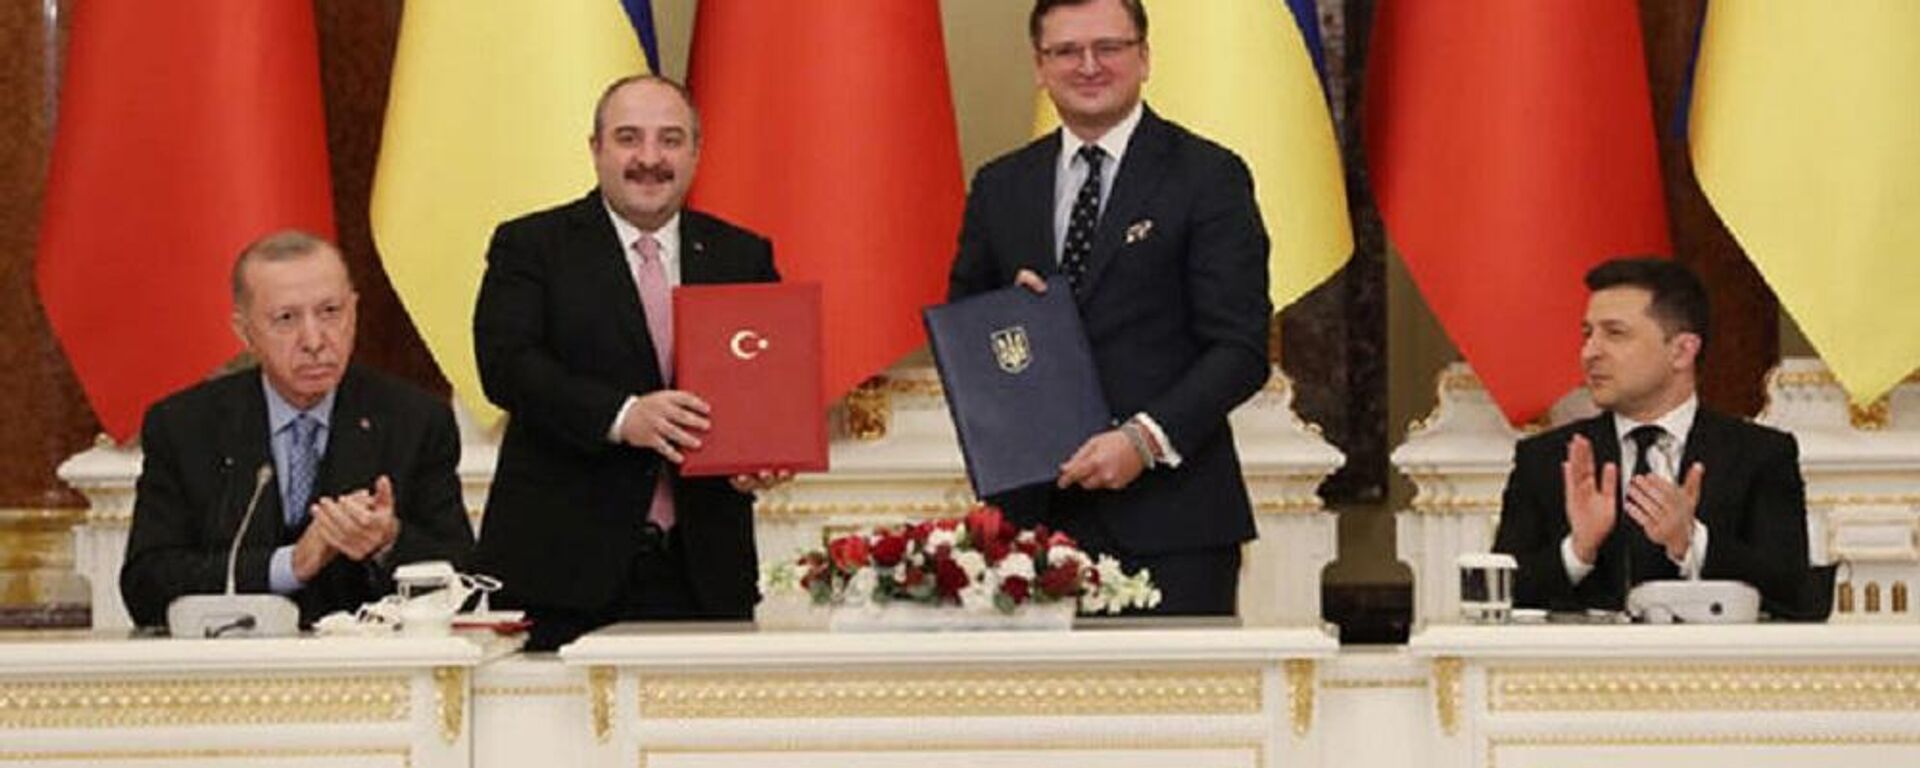 Bakanlık'tan Ukrayna ile işbirliği anlaşmasına ilişkin açıklama - Sputnik Türkiye, 1920, 03.02.2022